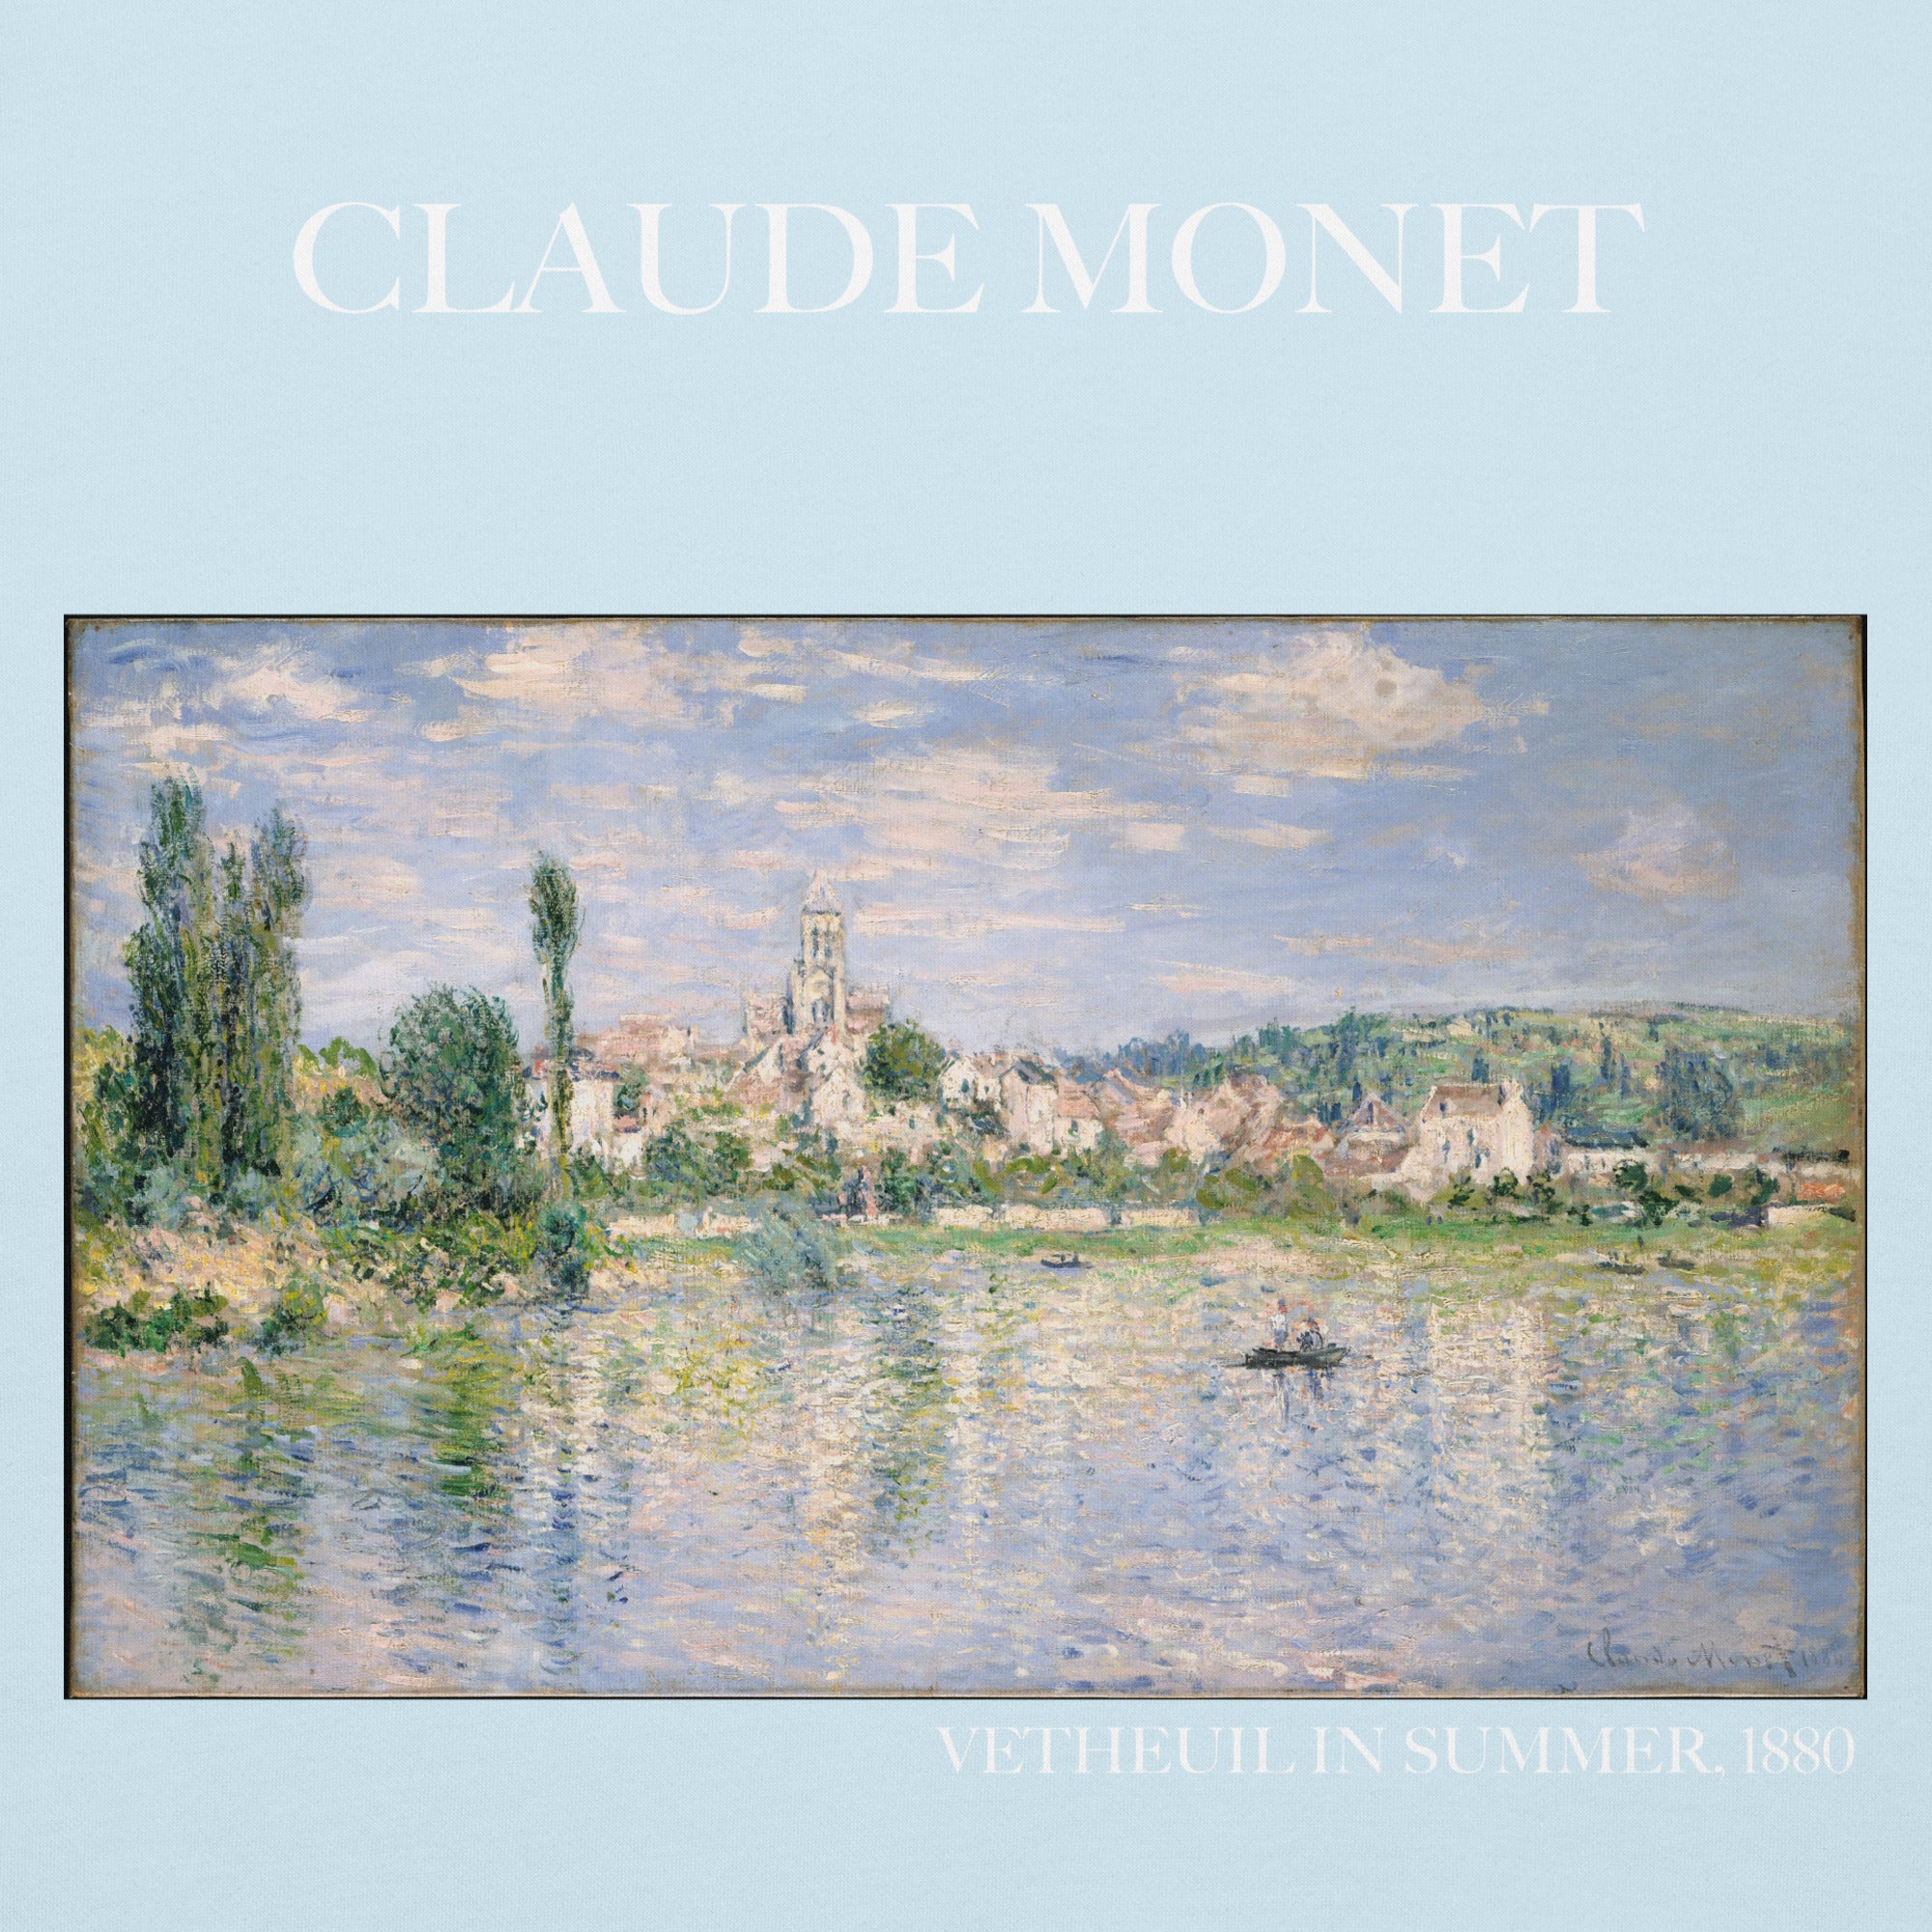 Claude Monet „Vetheuil im Sommer“ Berühmtes Gemälde Hoodie | Unisex Premium Kunst Hoodie